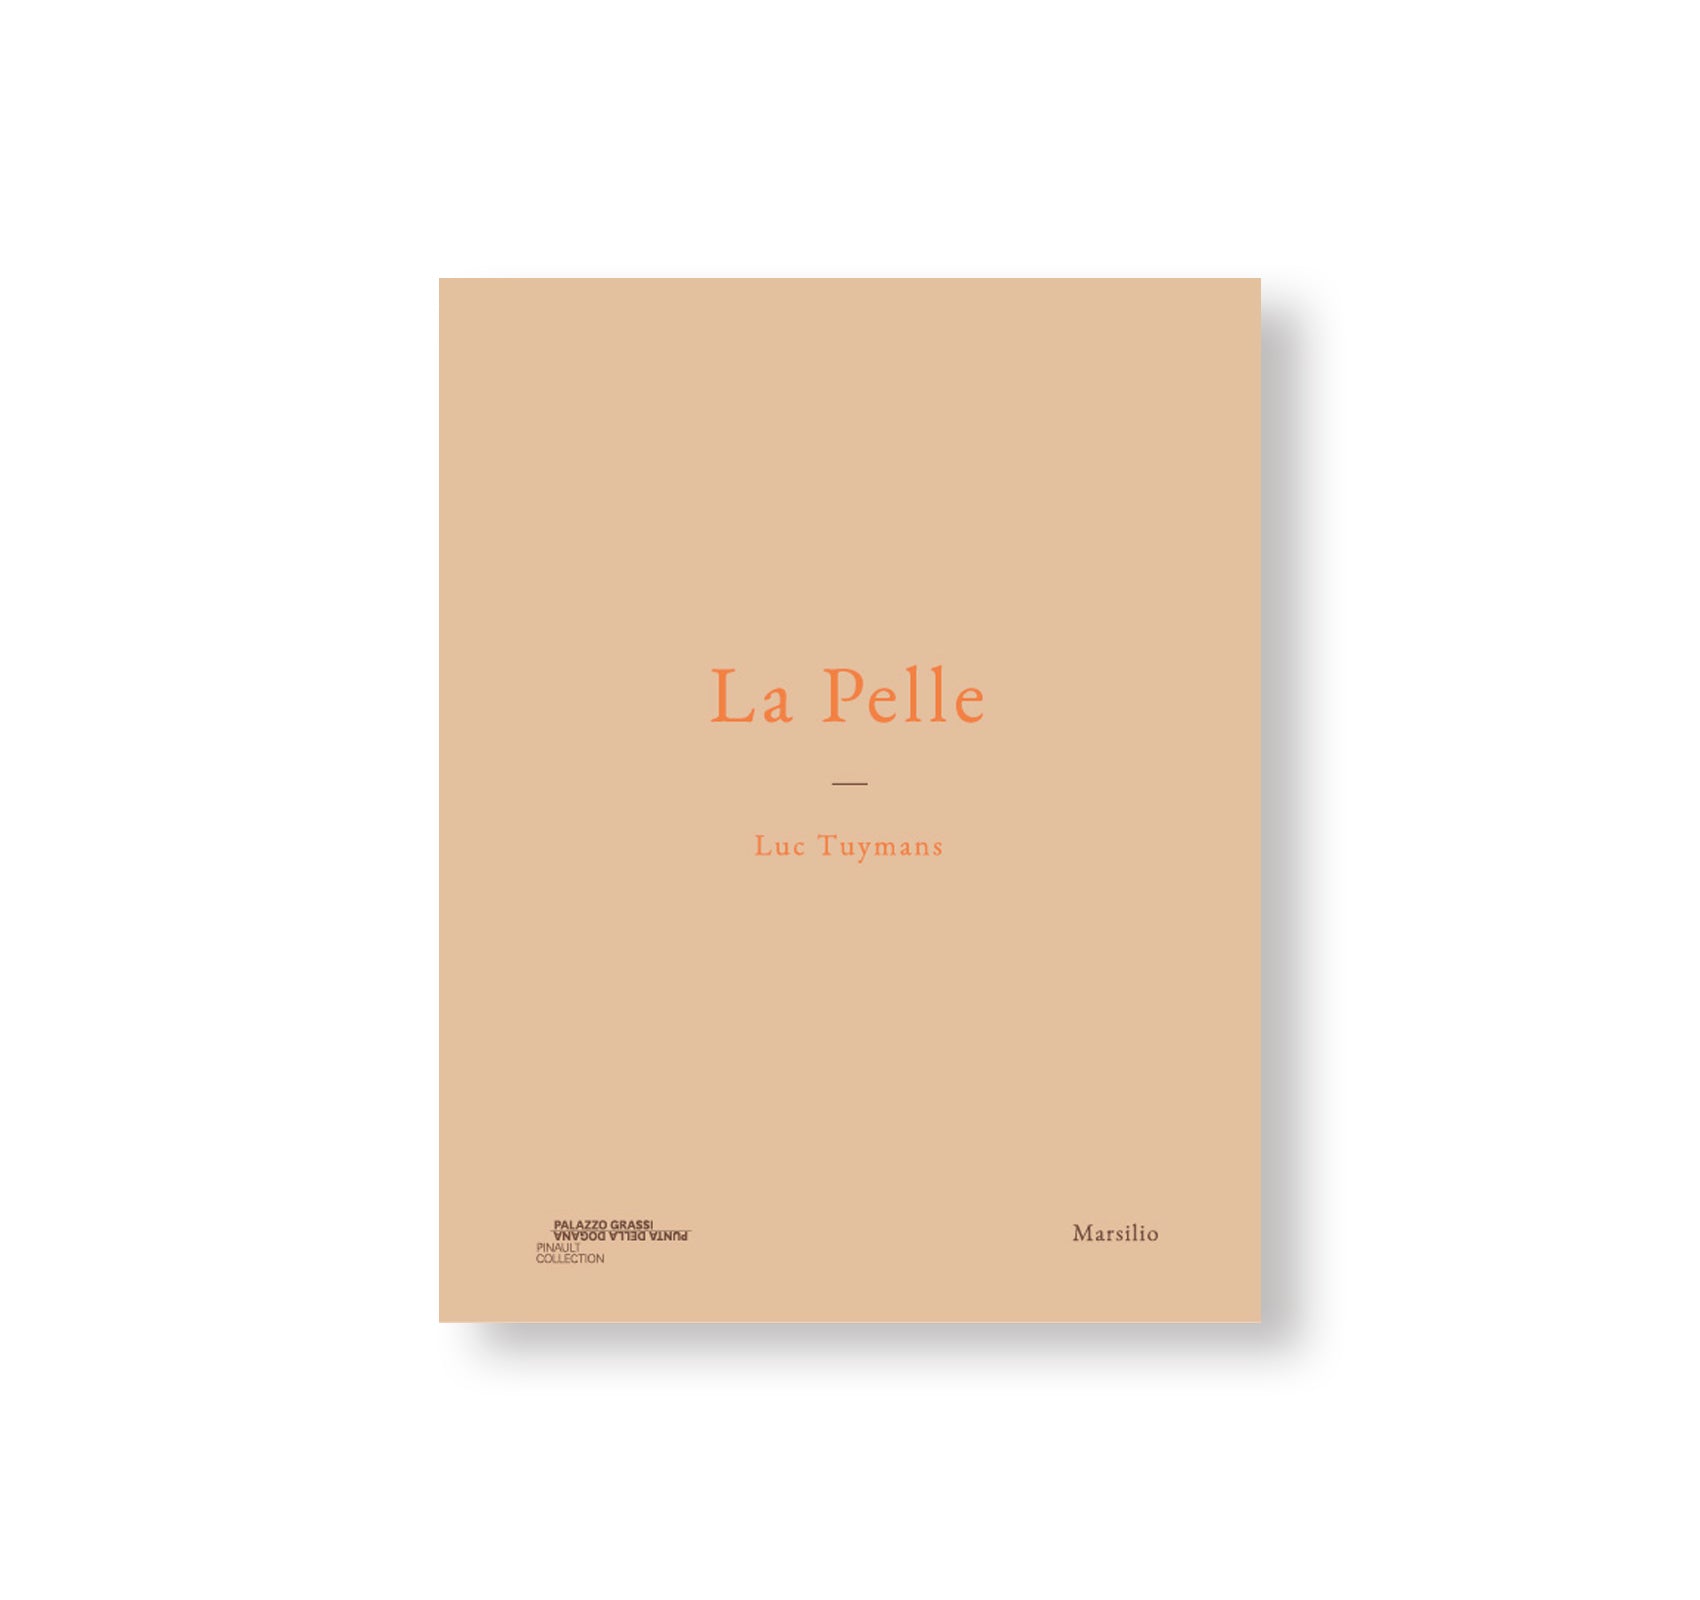 LA PELLE by Luc Tuymans